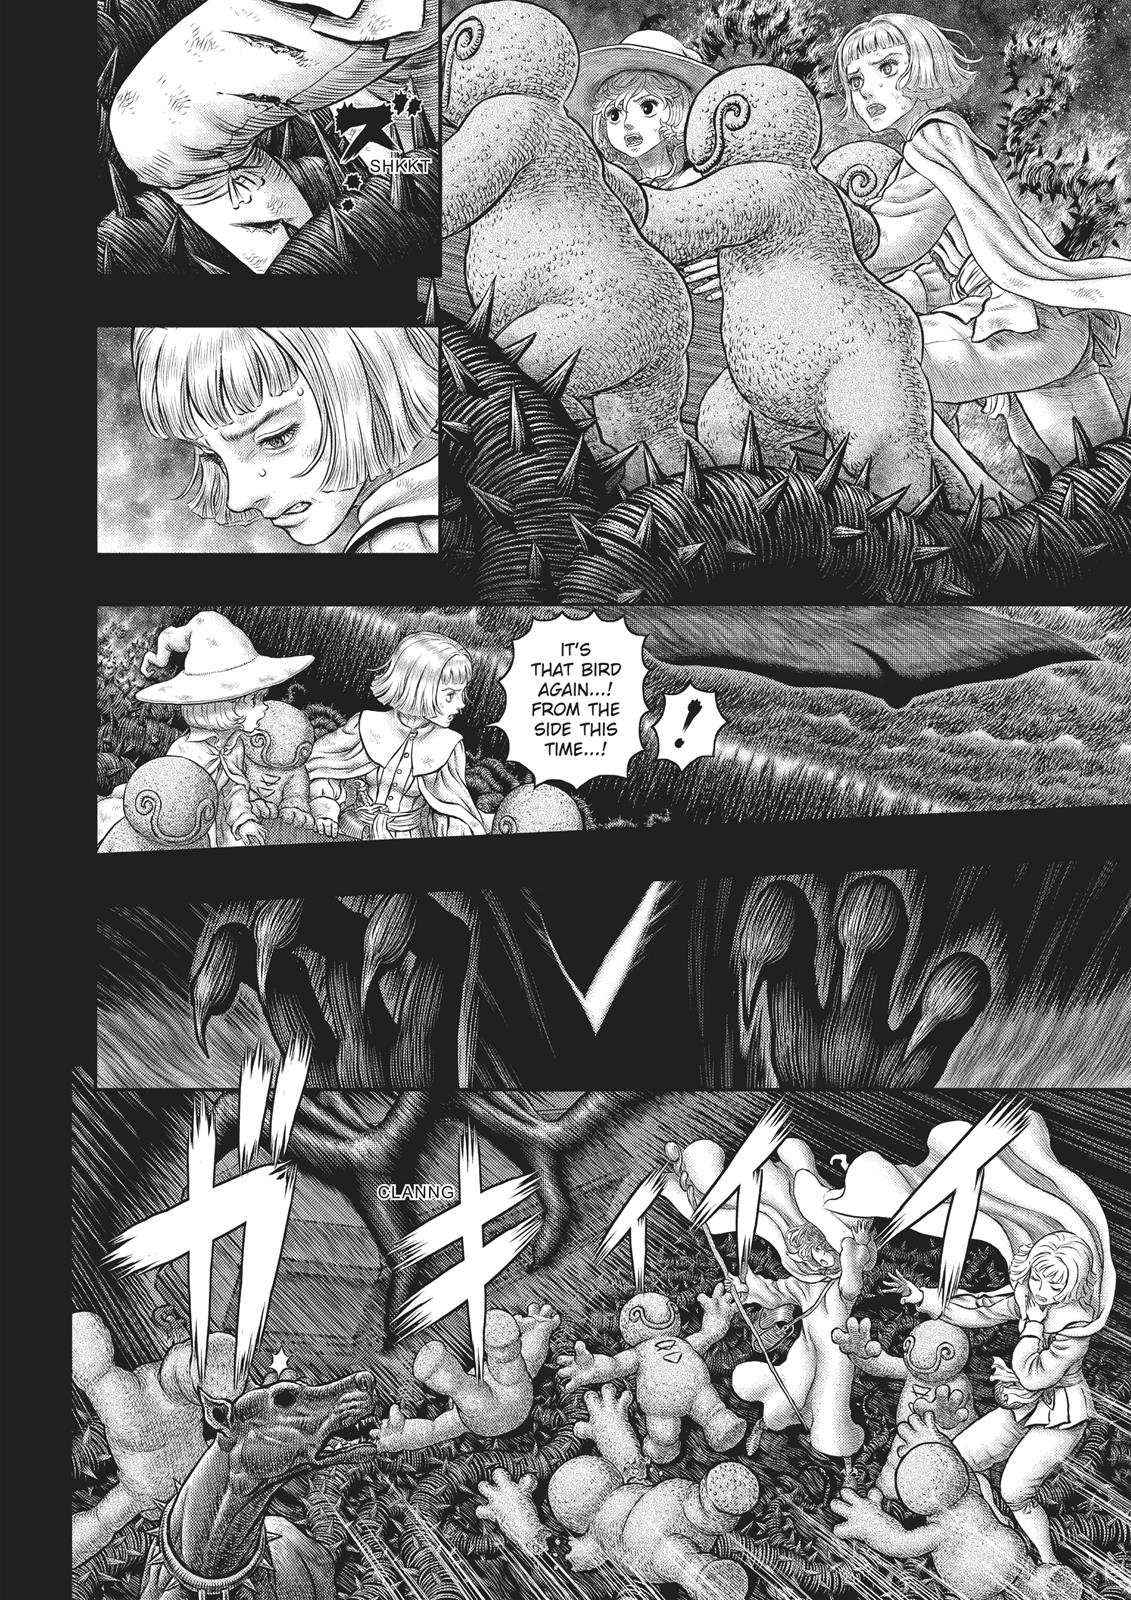 Berserk Manga Chapter 352 image 11